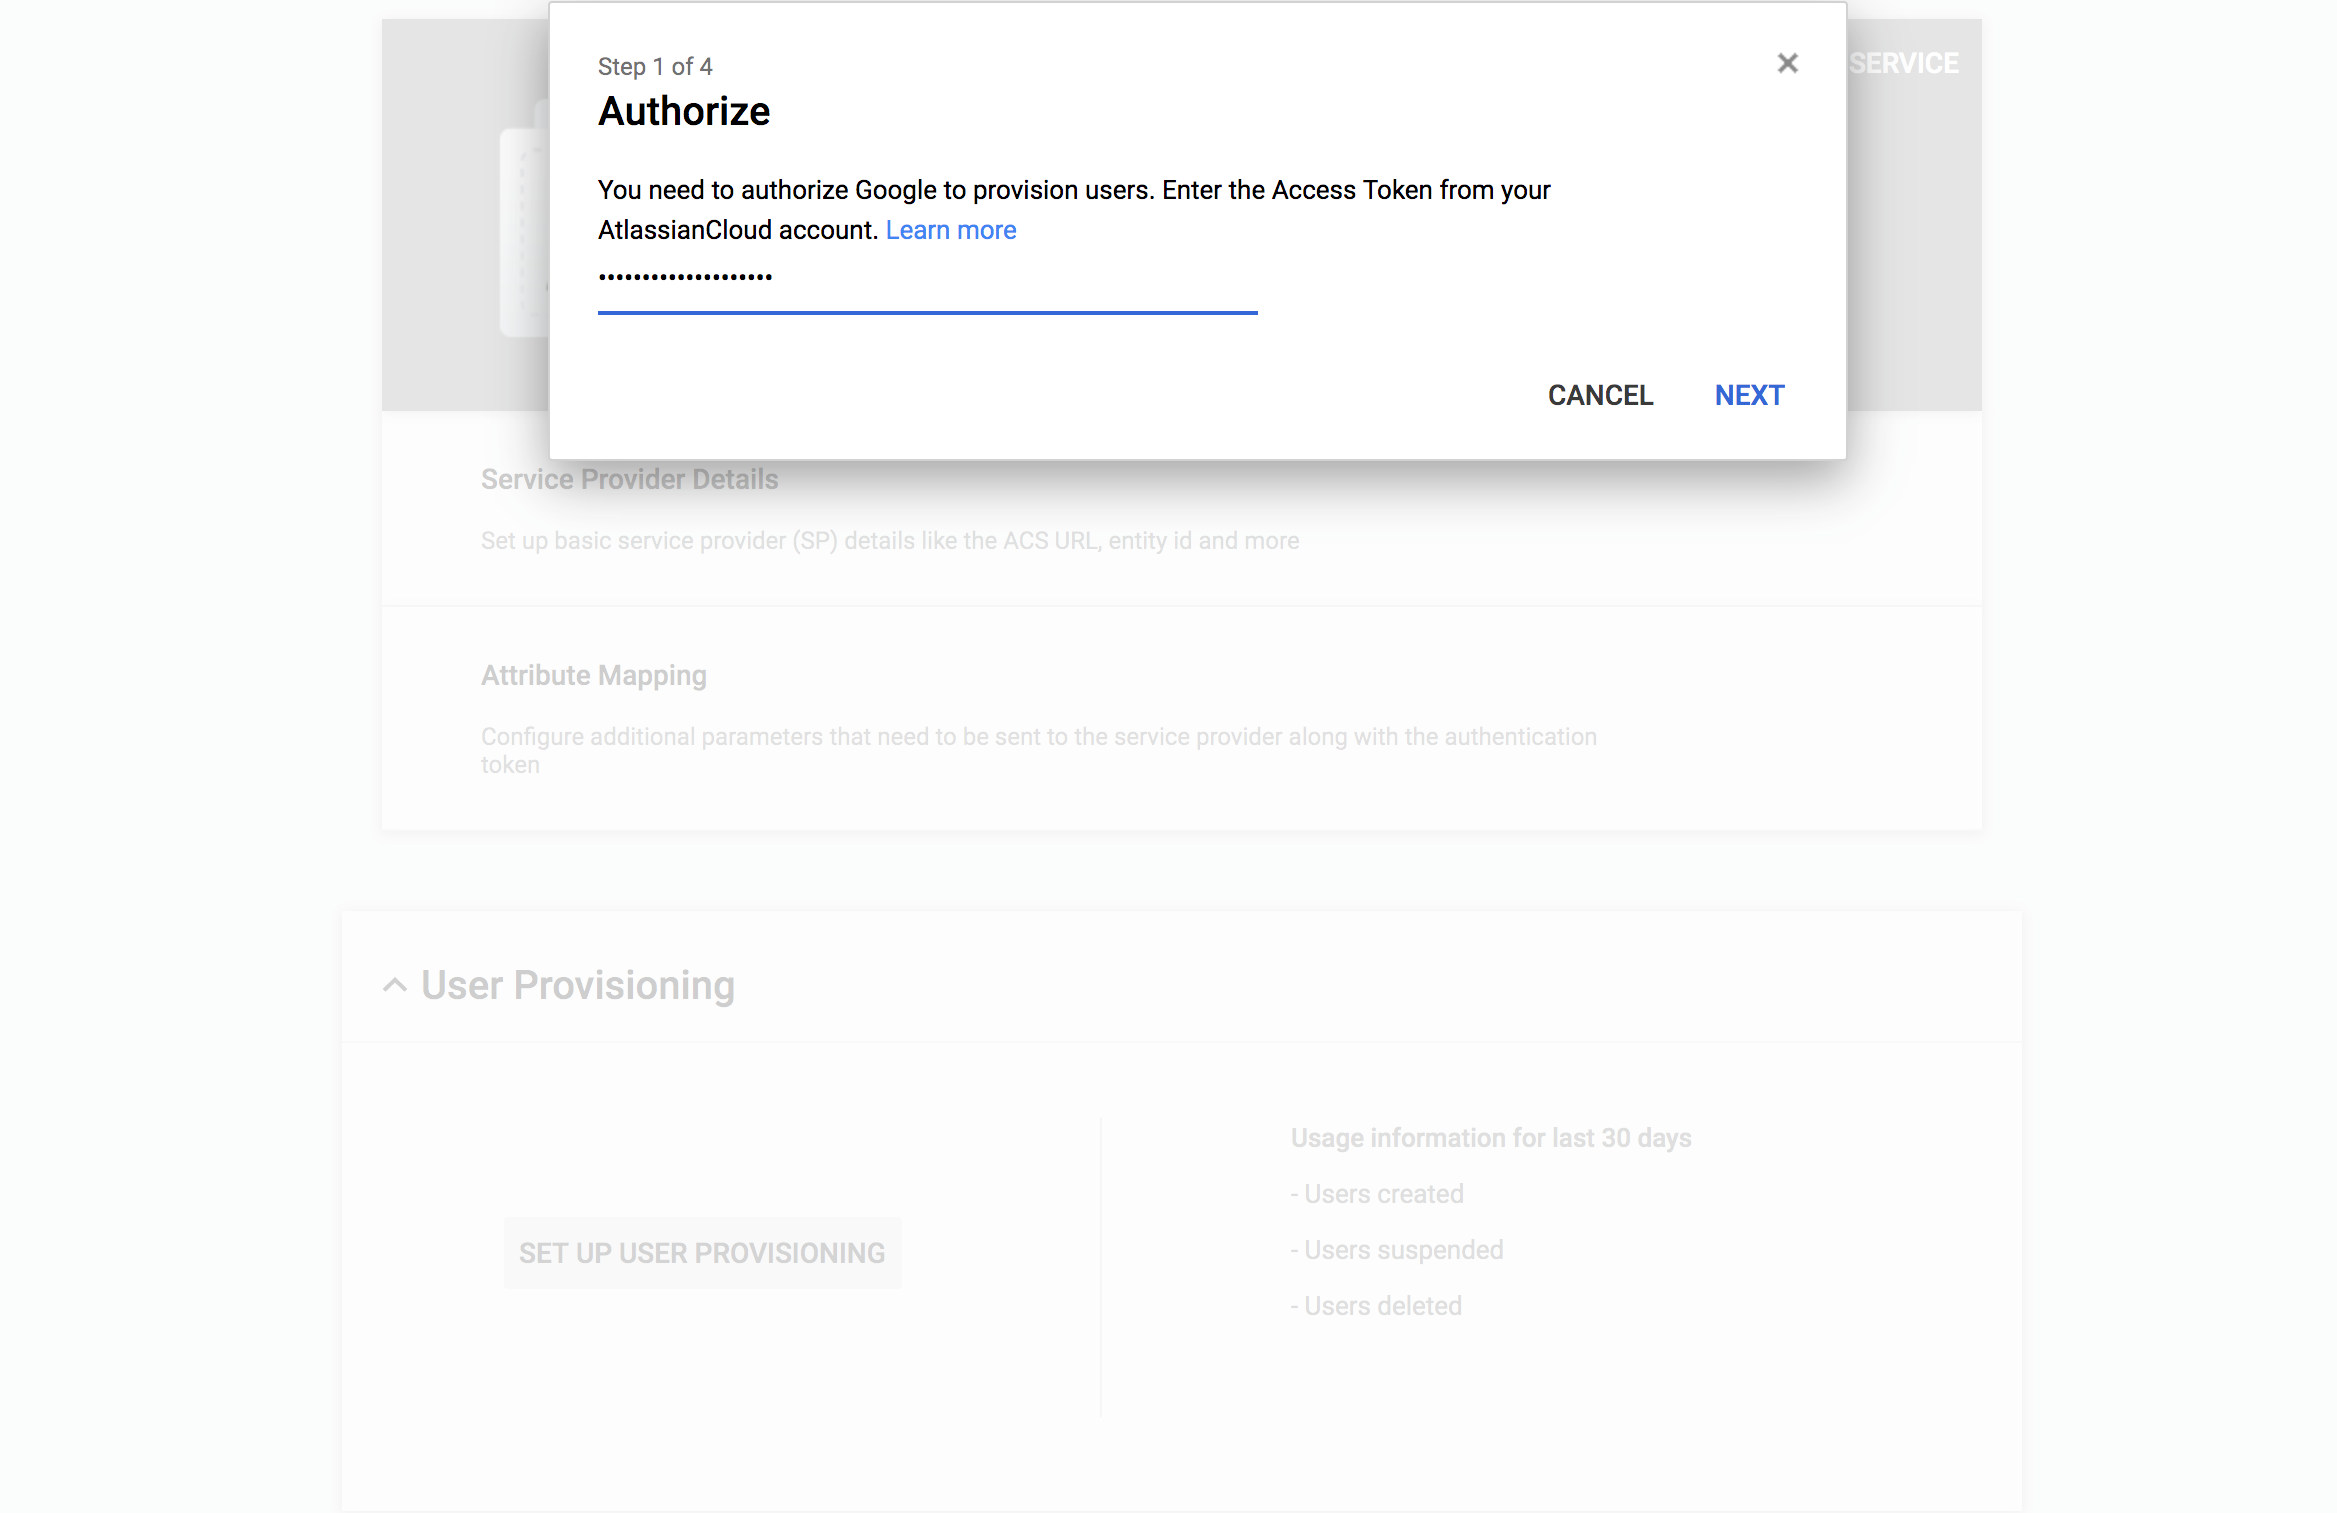 スクリーンショット: Atlassian アカウントからアクセス トークンの入力を求める認証画面